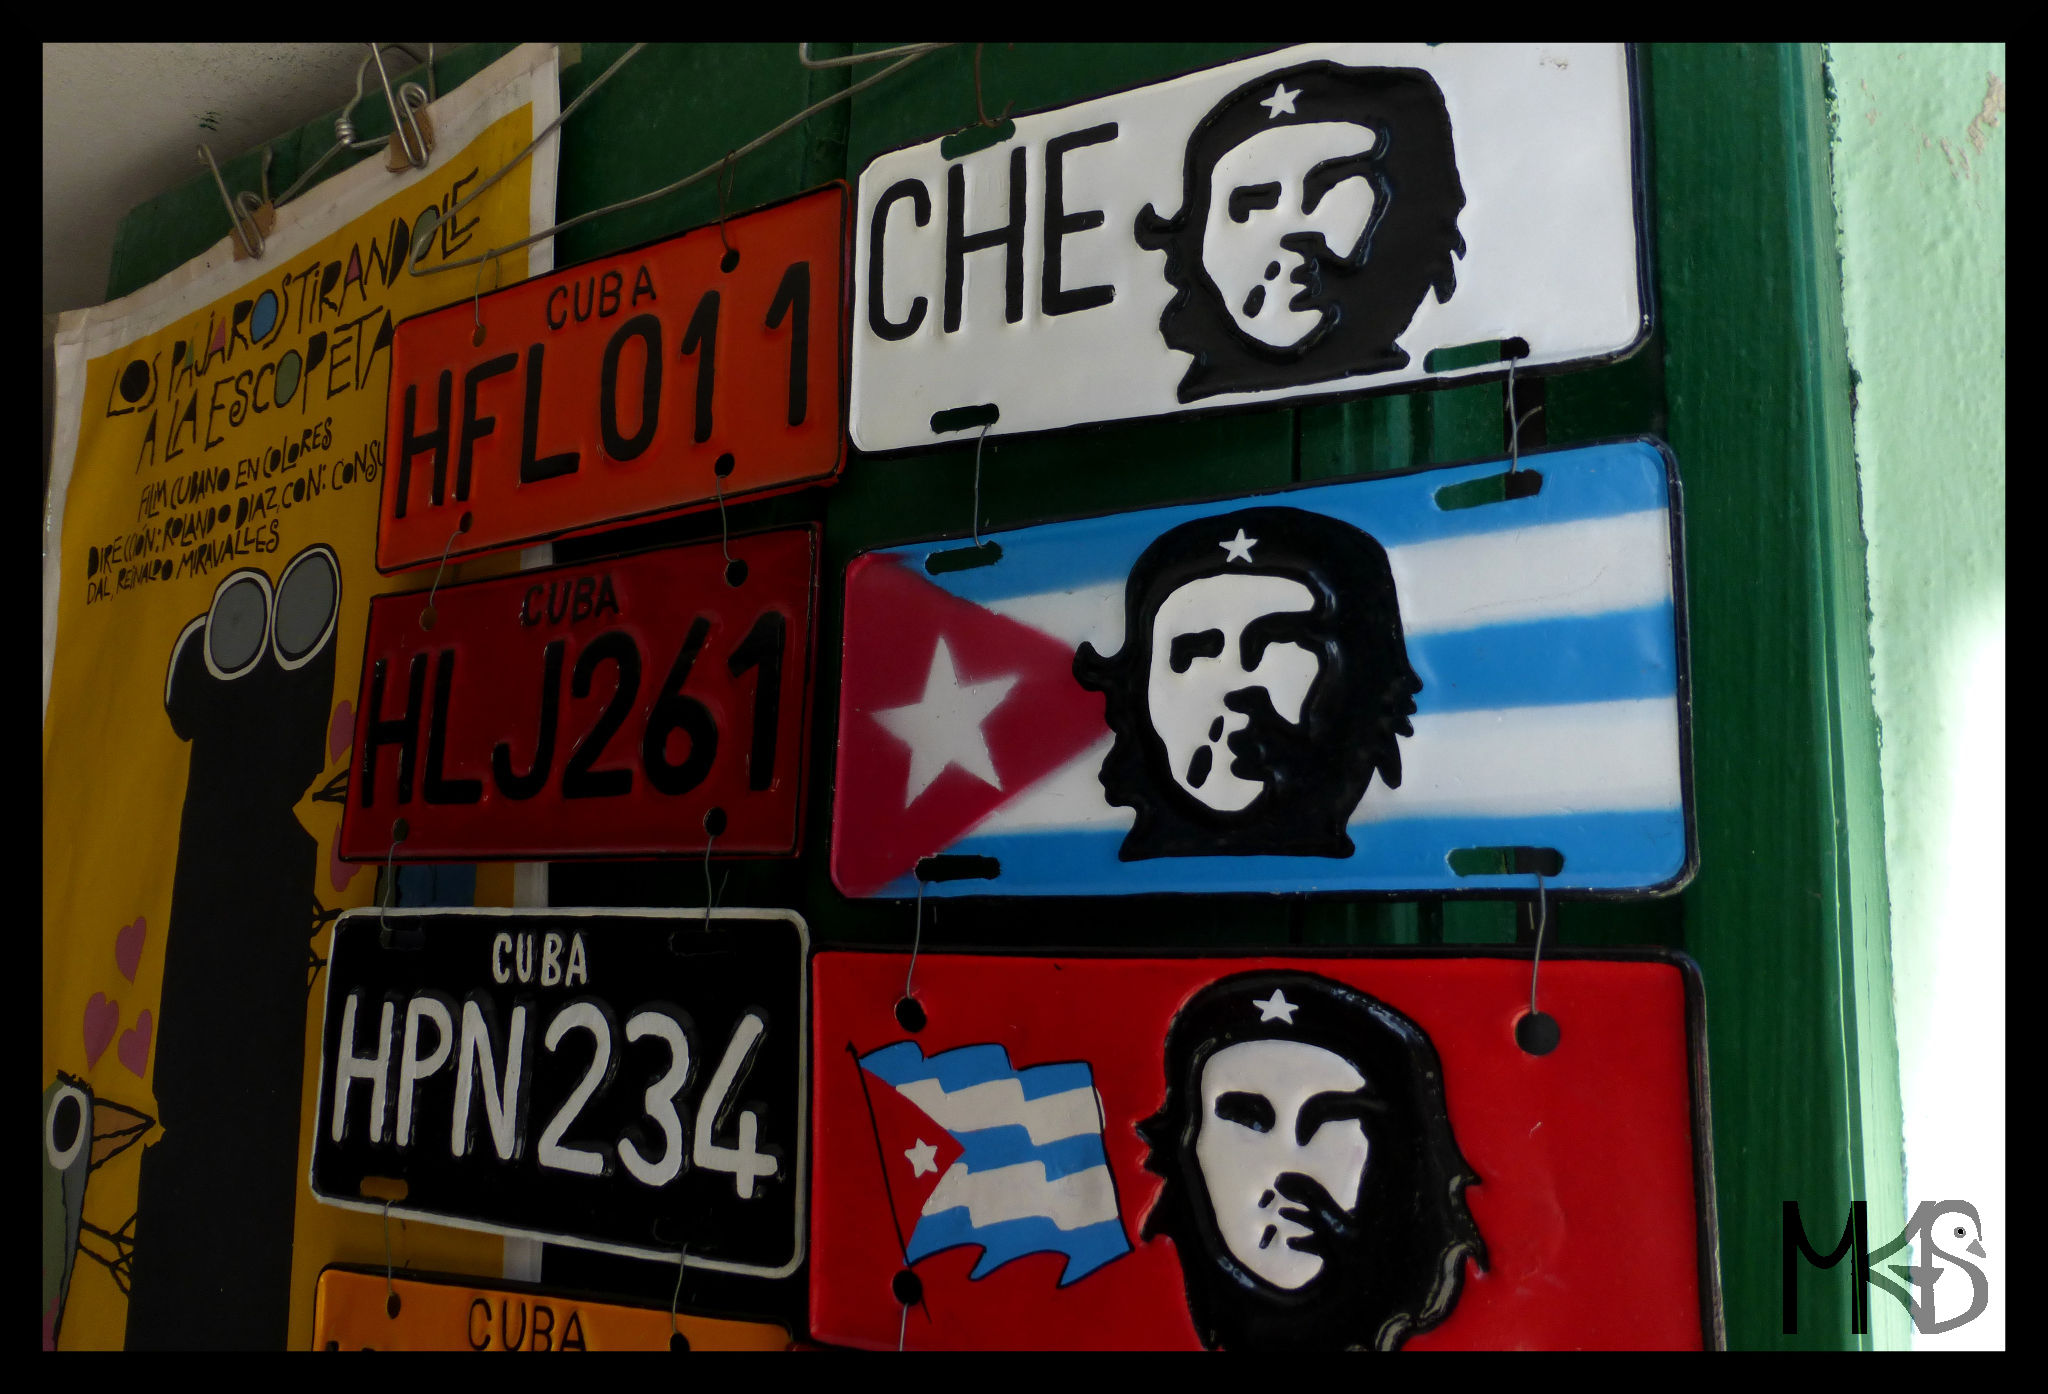 Souvenirs with "Che", Havana, Cuba